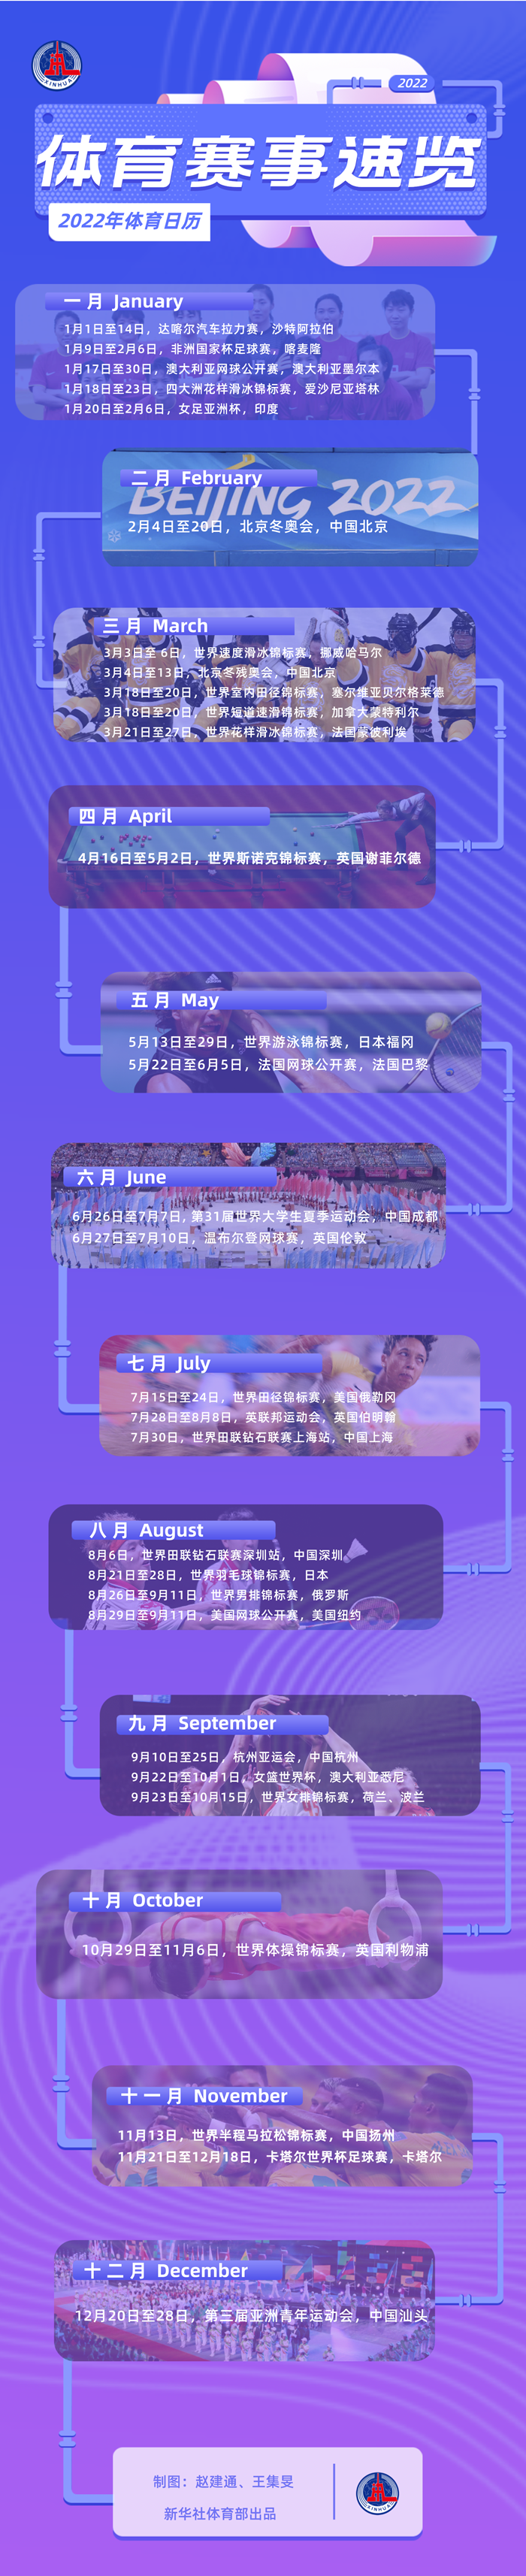 北京欢迎你，一起向未来——2022年体育赛事展望